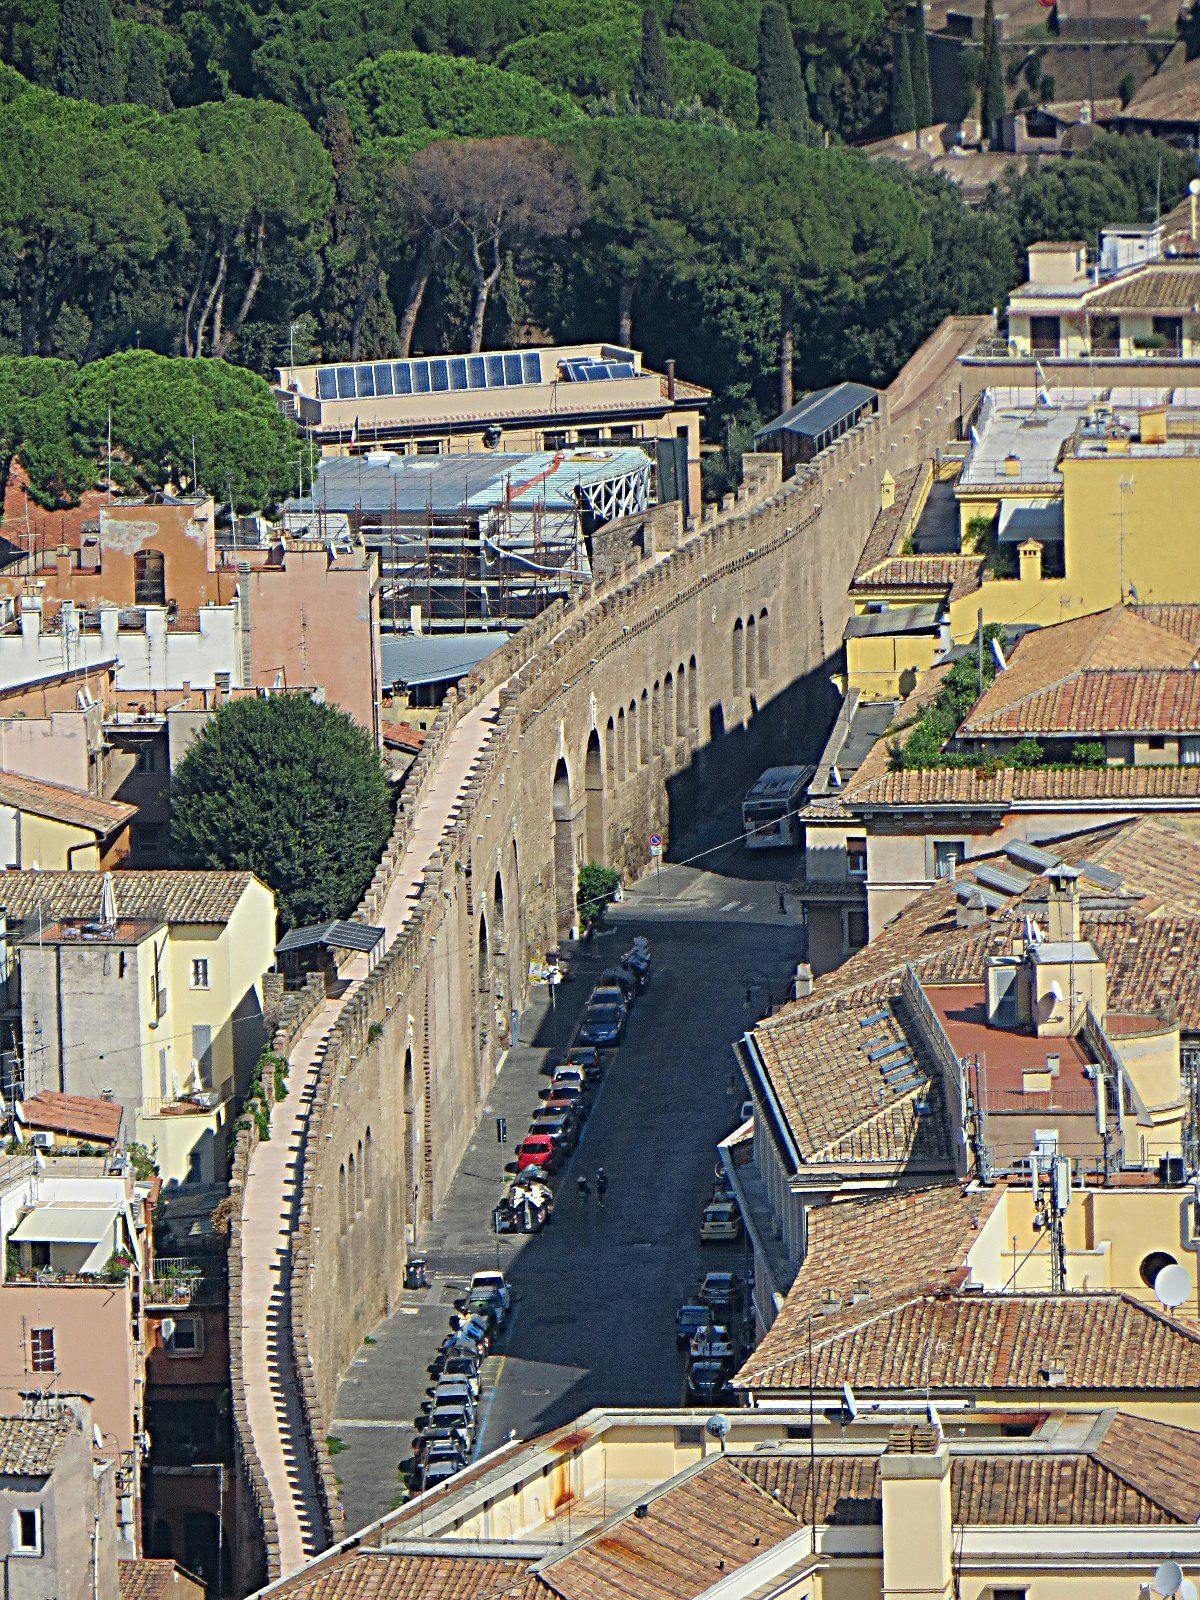 Passetto di Borgo (Mister, CC BY 3.0 Wikimedia Commons)